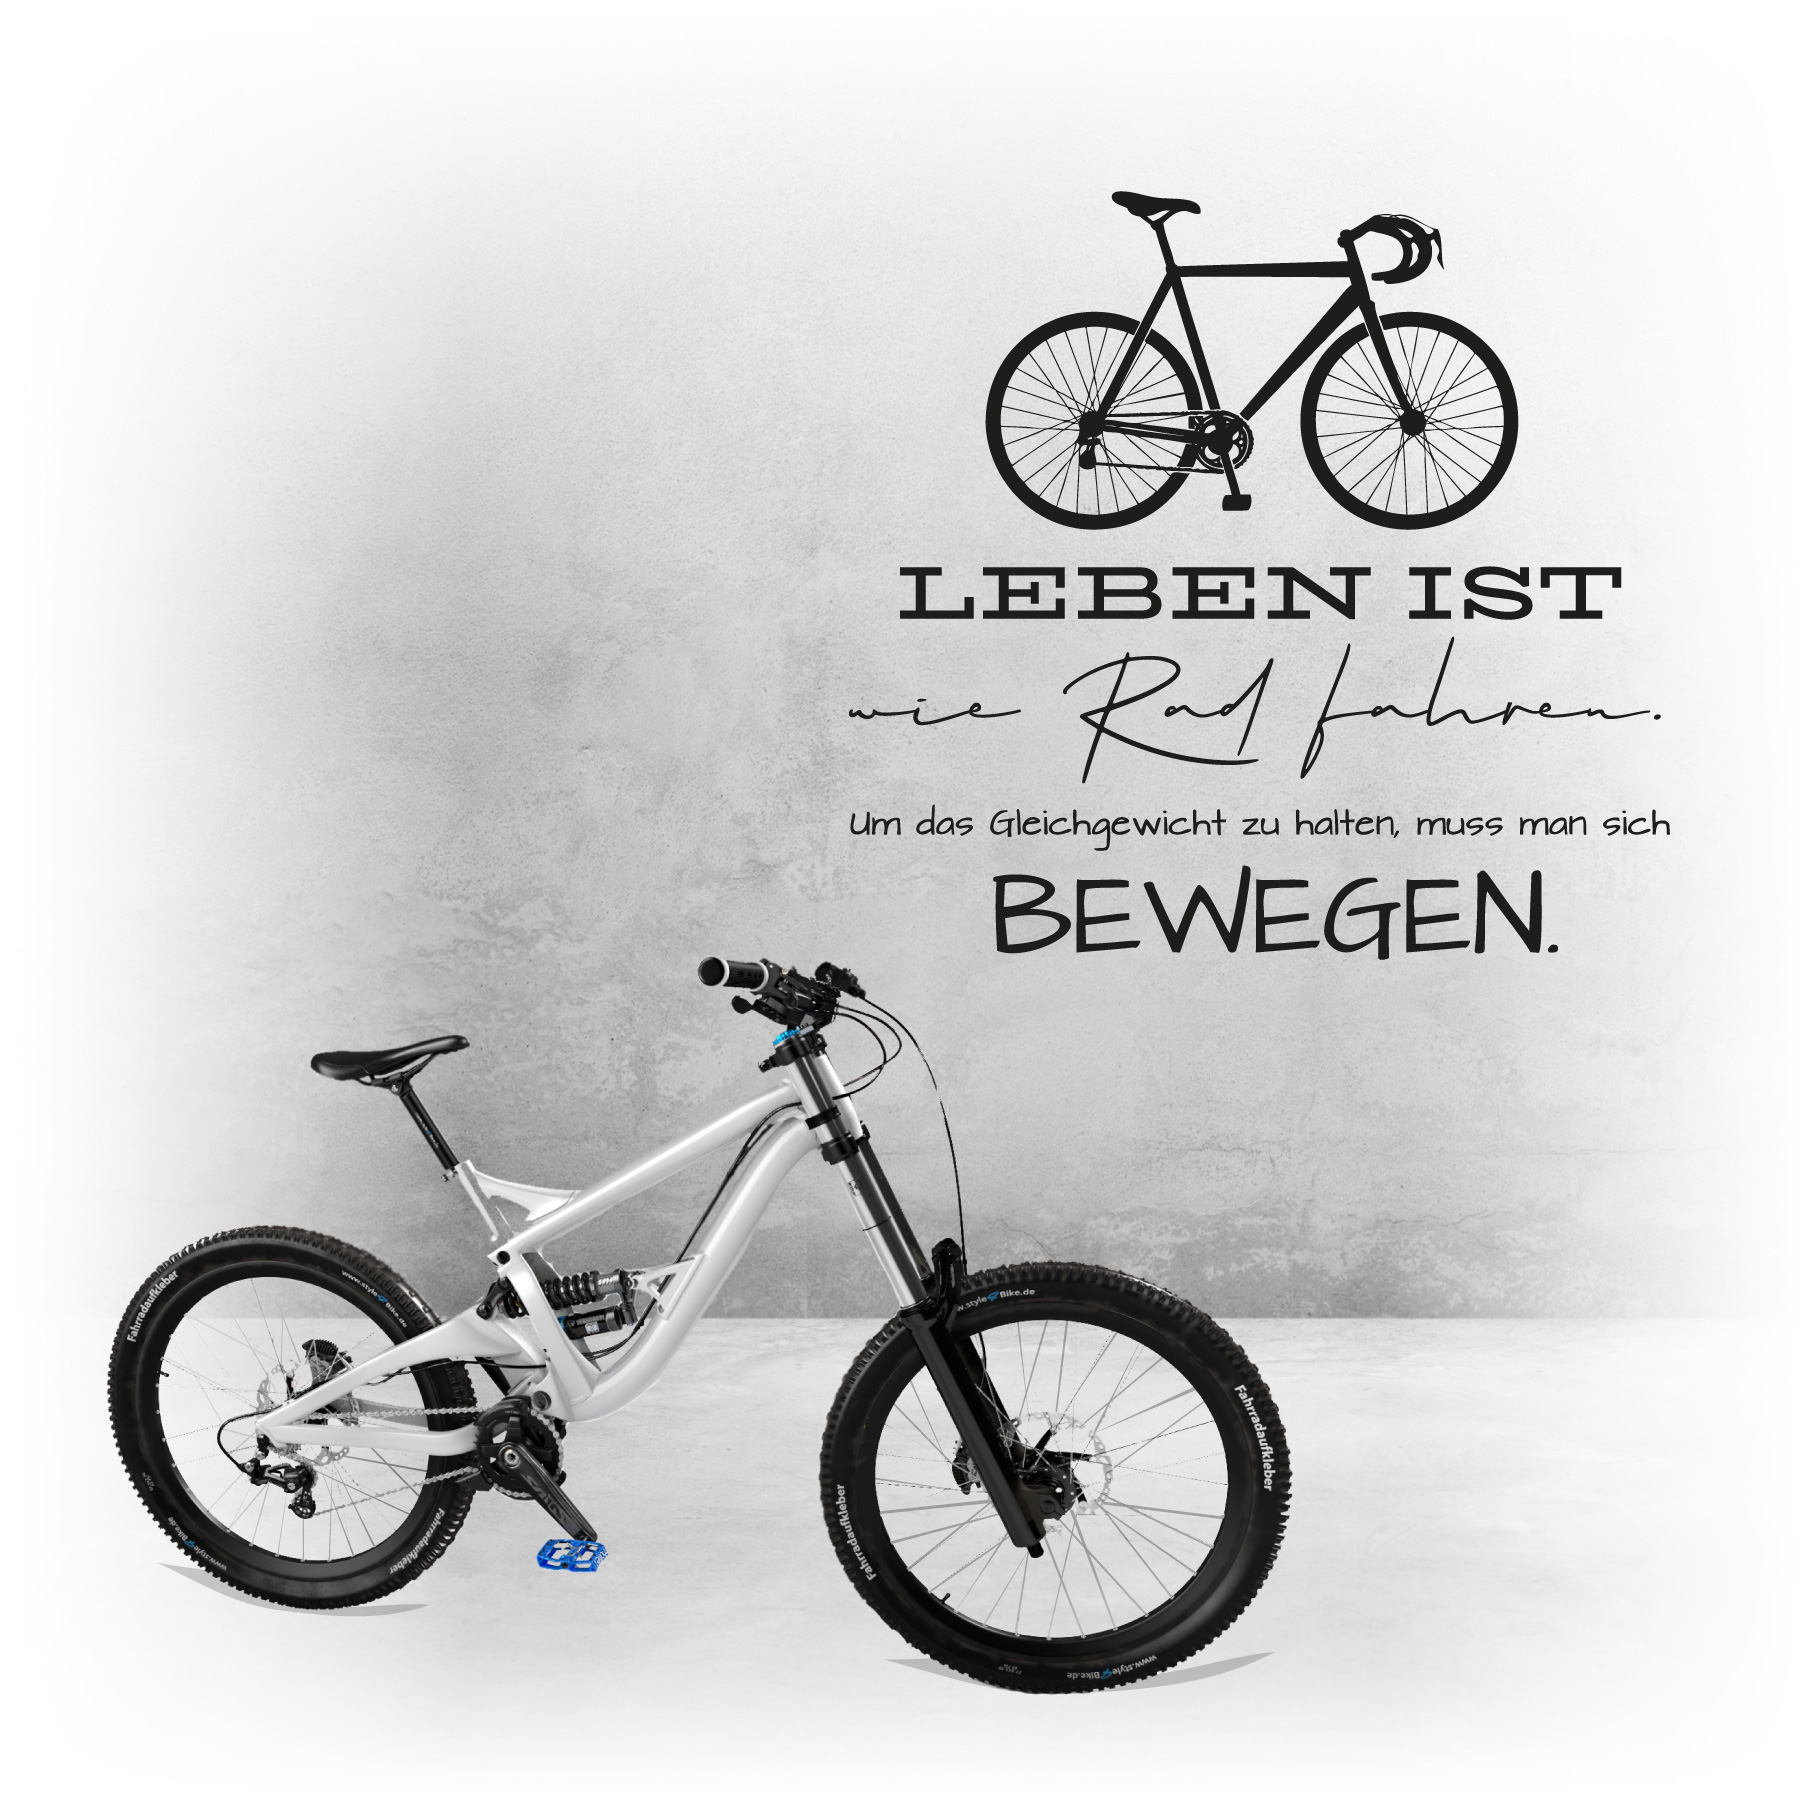 Leben ist wie Rad fahren bewegen Fahrrad Wandaufkleber X1631 Wandtattoo Spruch